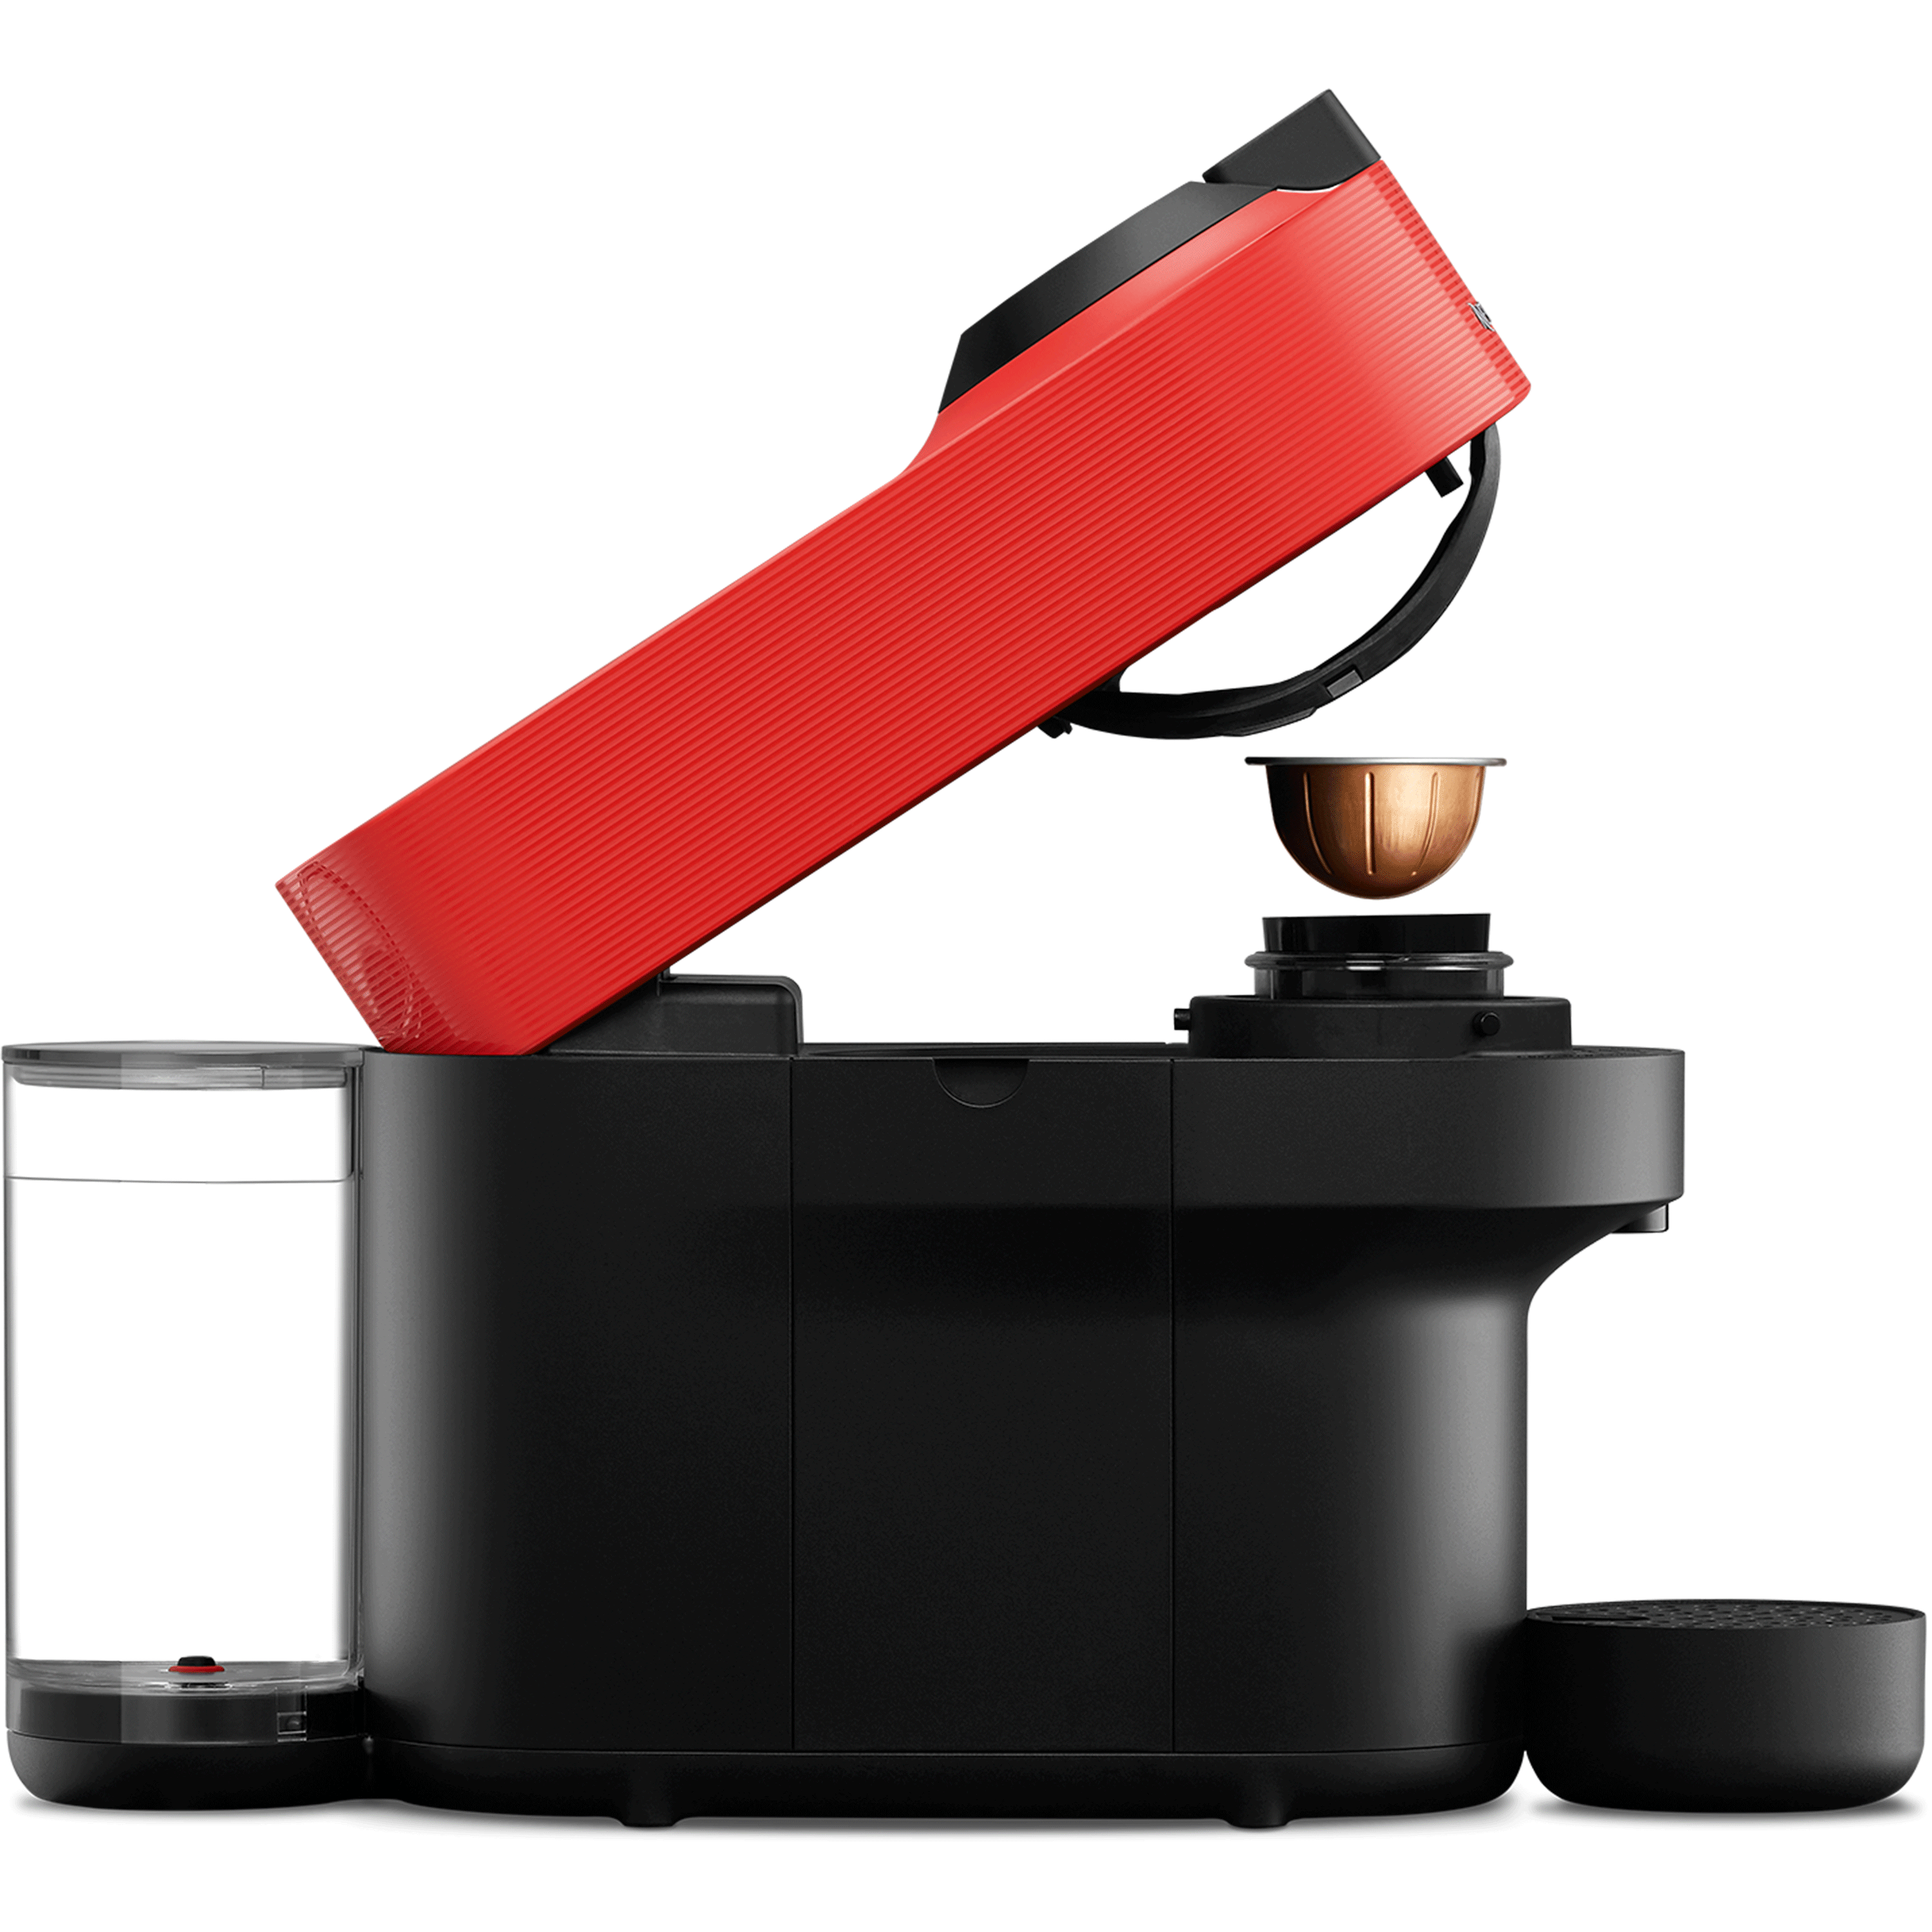 מכונת קפה נספרסו  ורטו פופ בגוון אדוםGCV2-IL-RE-NE